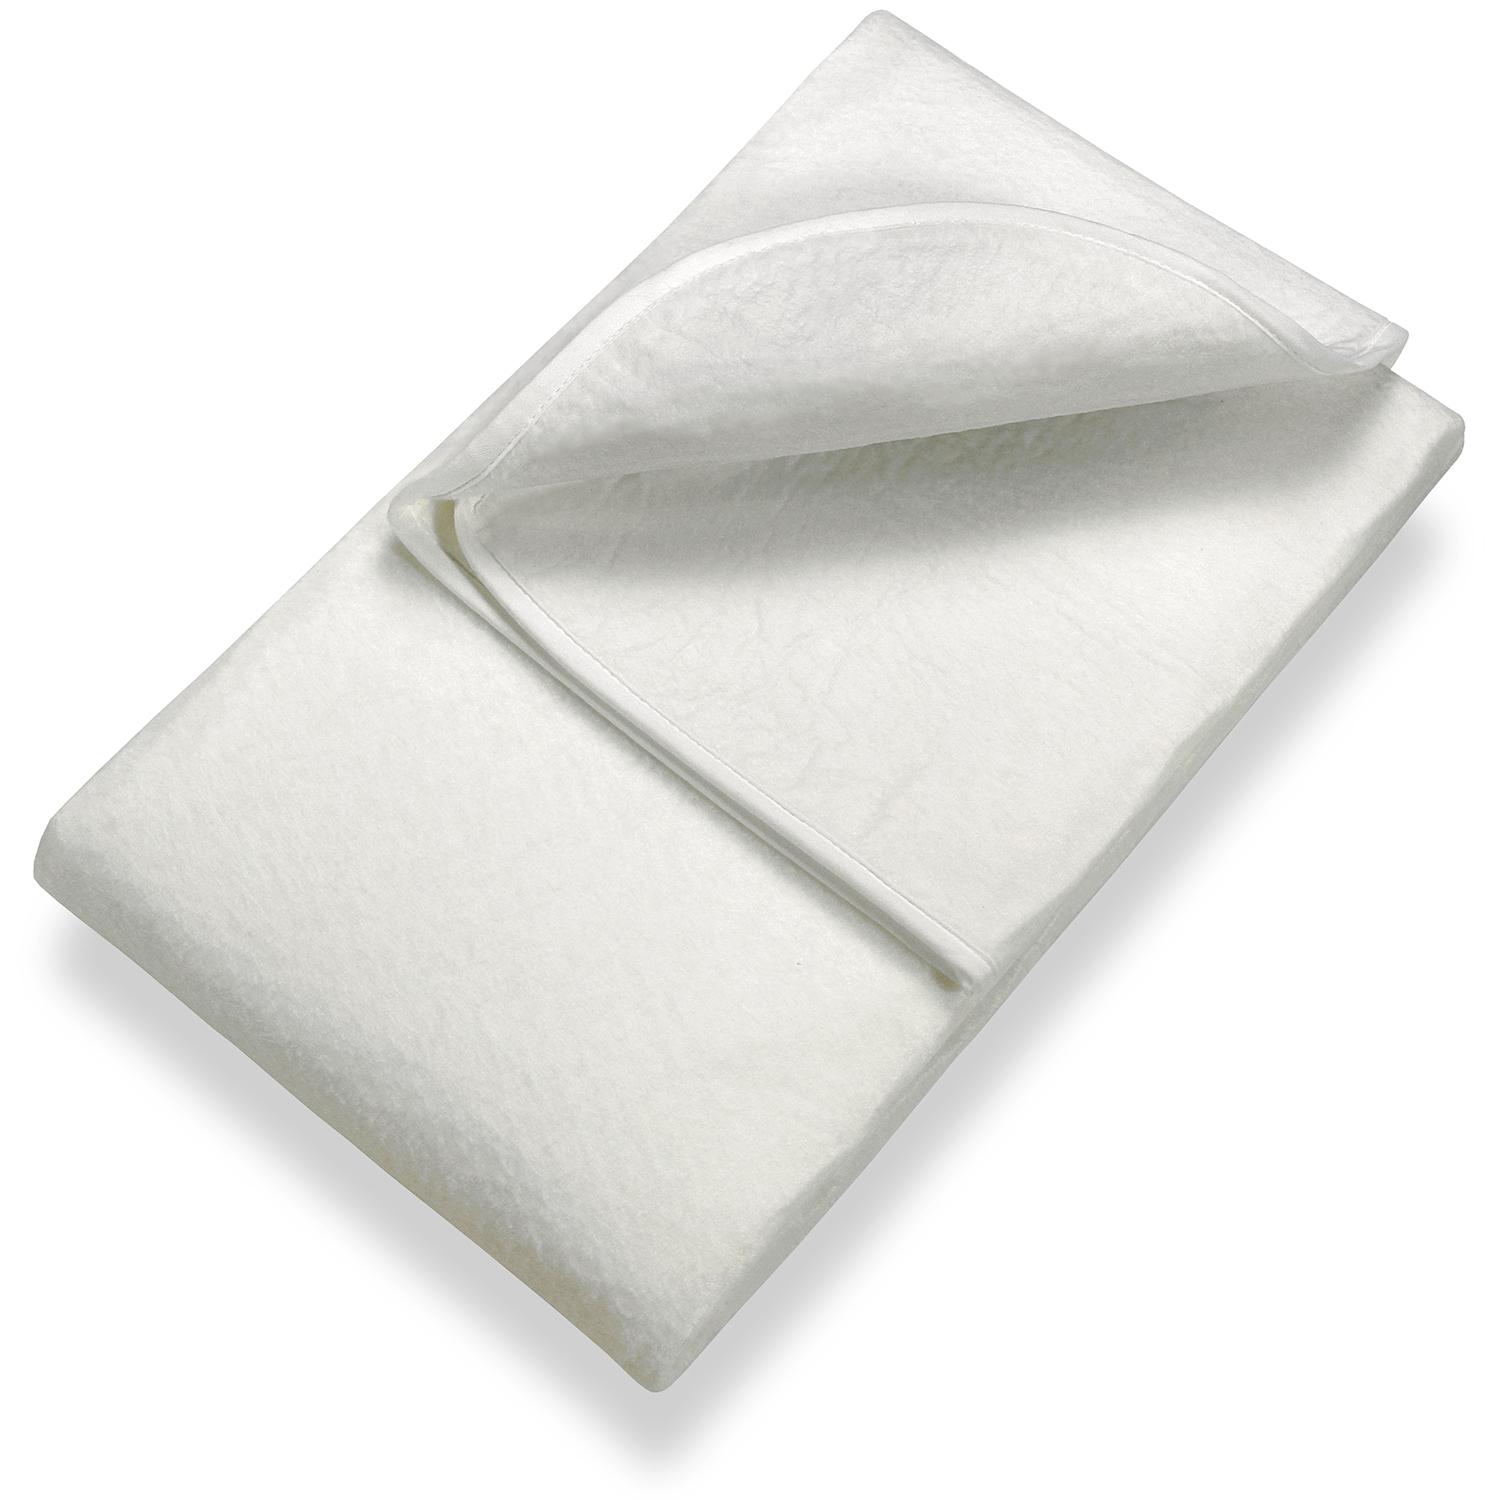 Sleezzz Basic podkład filcowy pod materac 140 x 200 cm, ochraniacz na materac do nałożenia na stelaż listwowy, biały